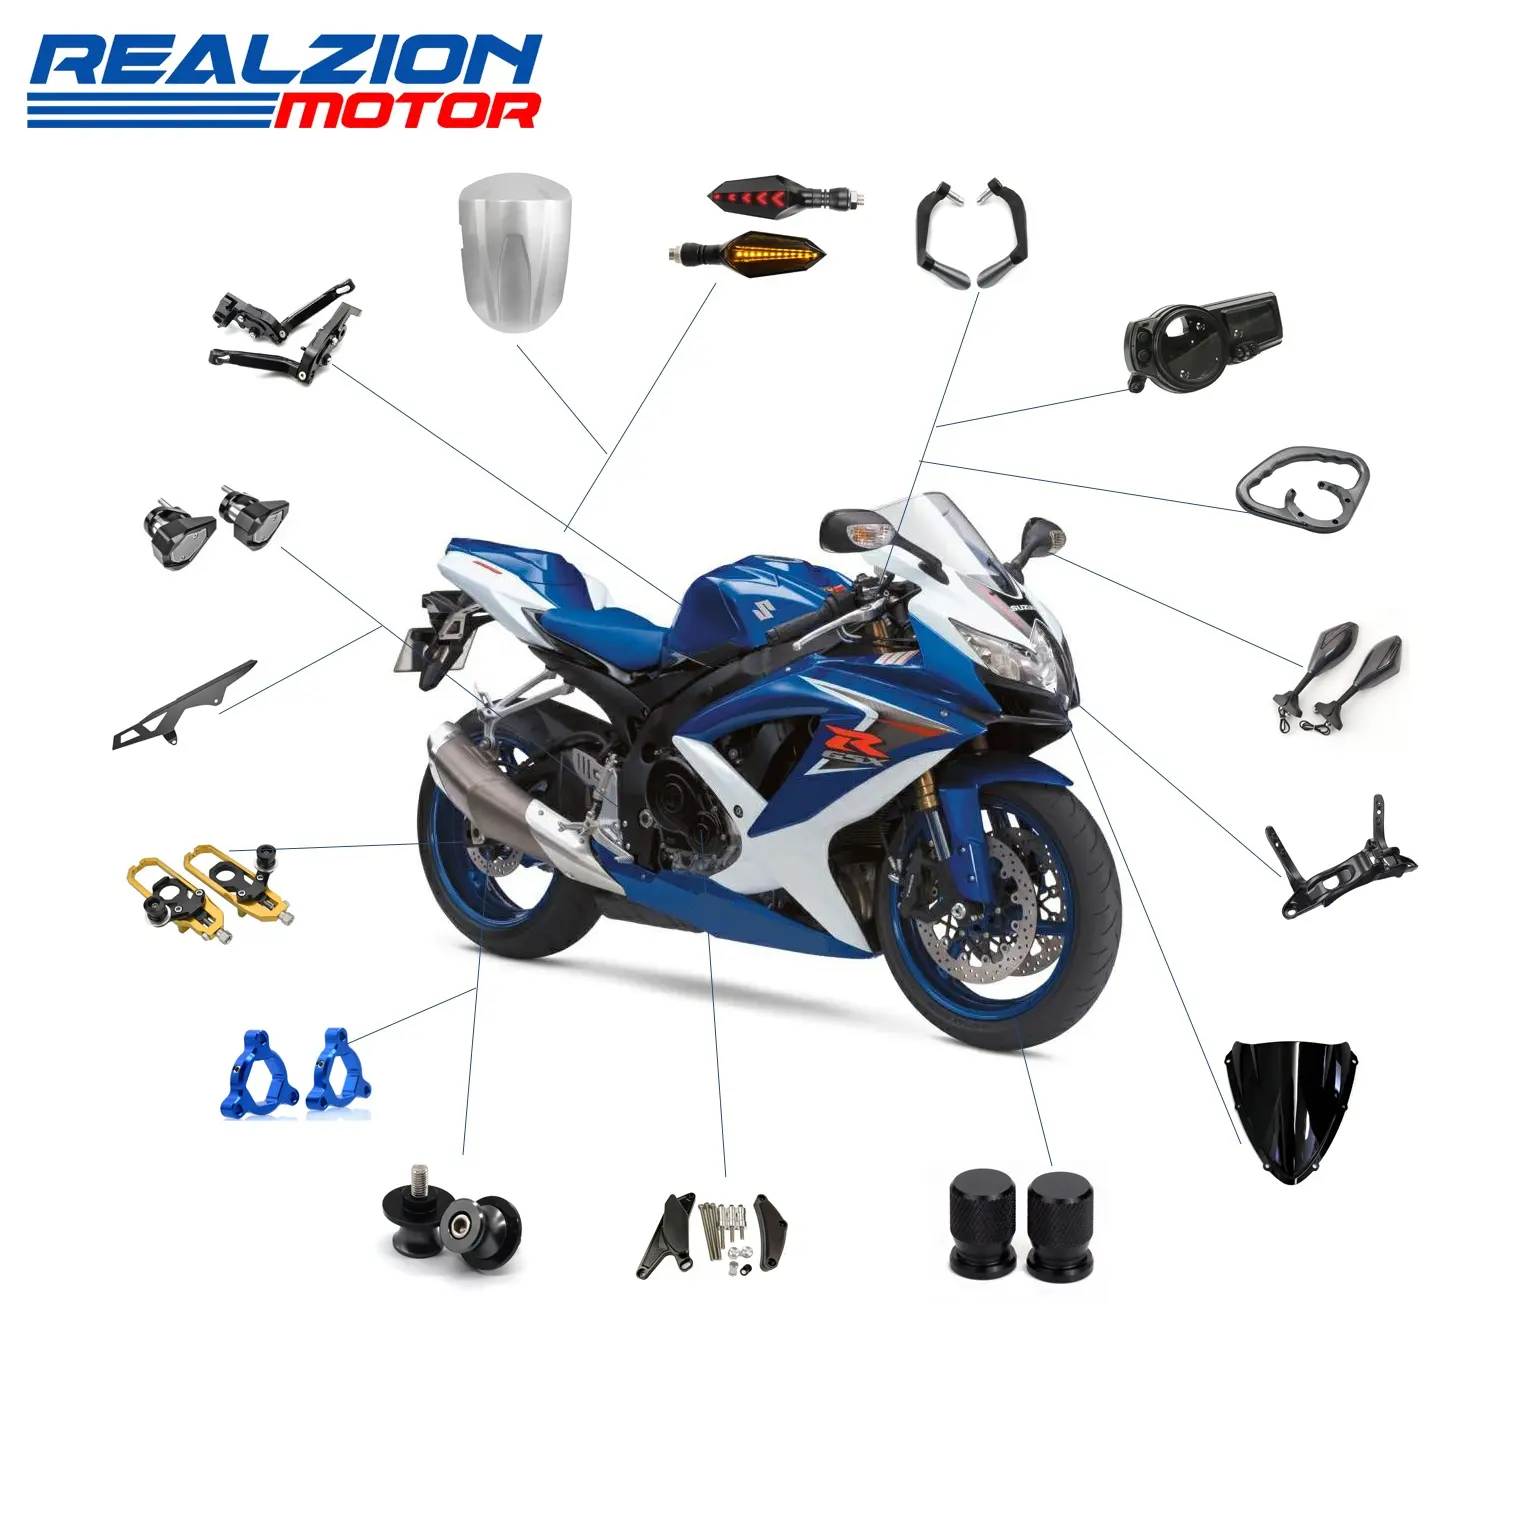 Realzion ชิ้นส่วนอะไหล่มอเตอร์ไซค์,อุปกรณ์แต่งรถจักรยานยนต์วิบากชิ้นส่วนอะไหล่สำหรับ Suzuki